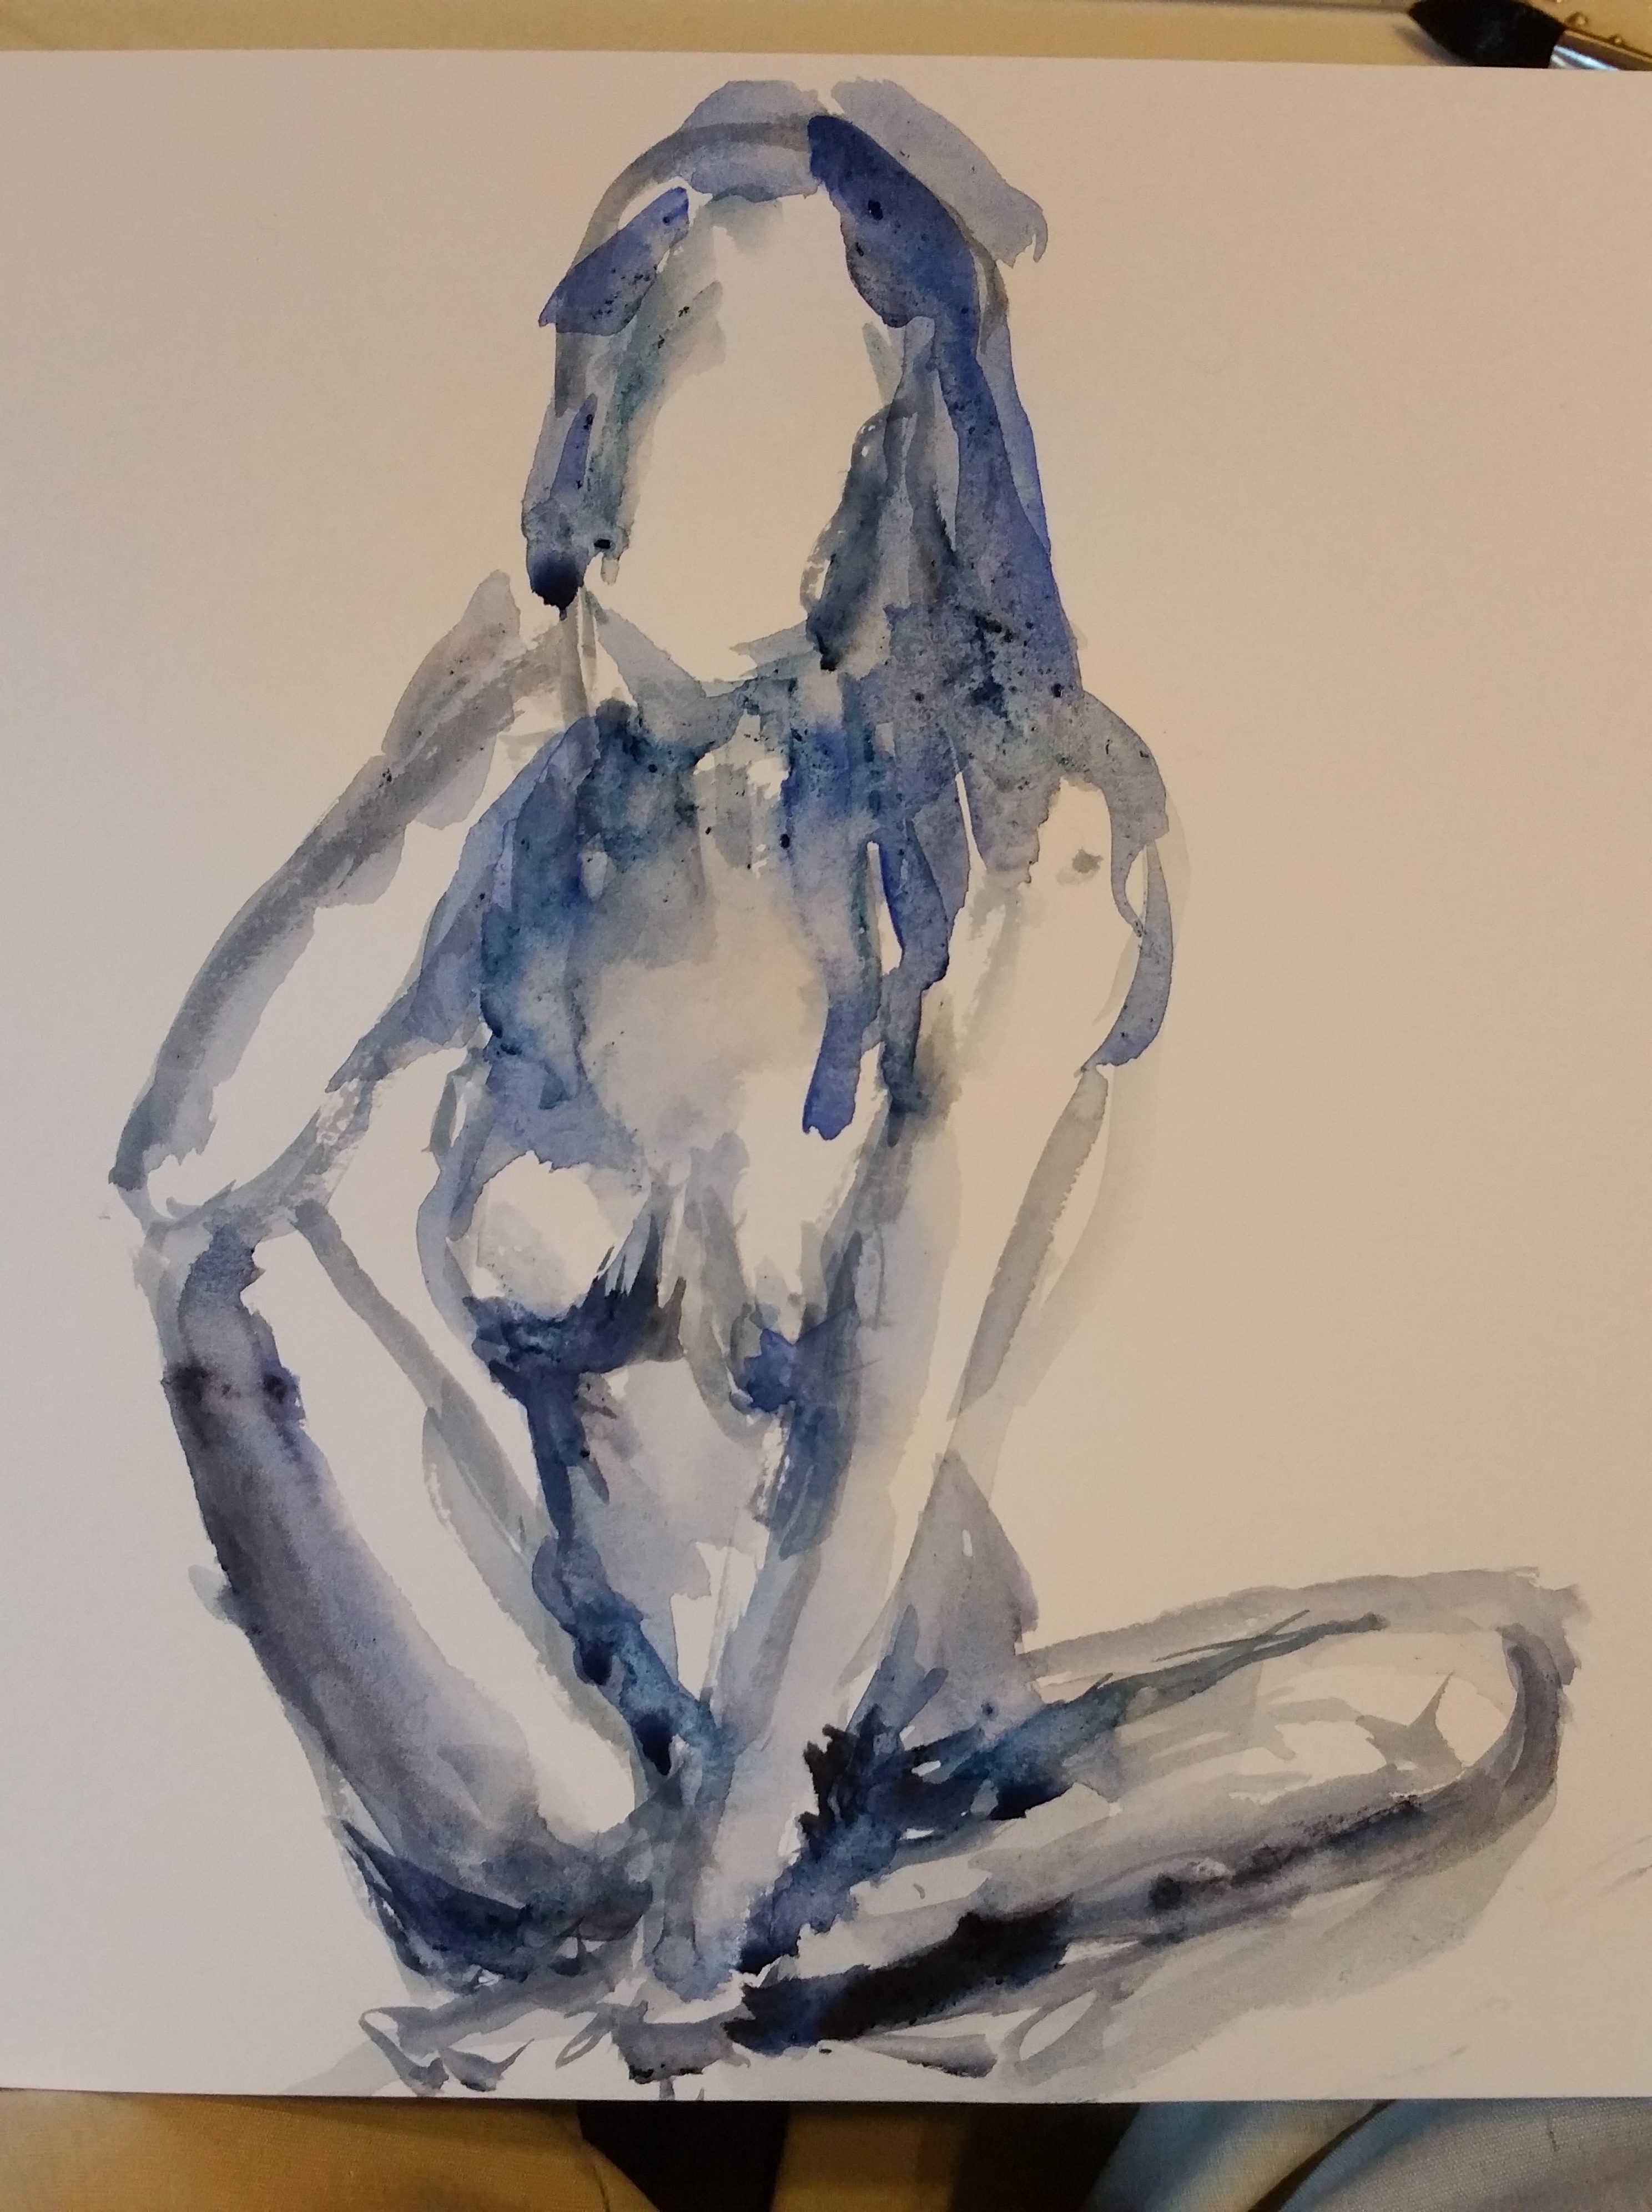  Croquis aquarelle bleu femme face assise  cours de dessin 